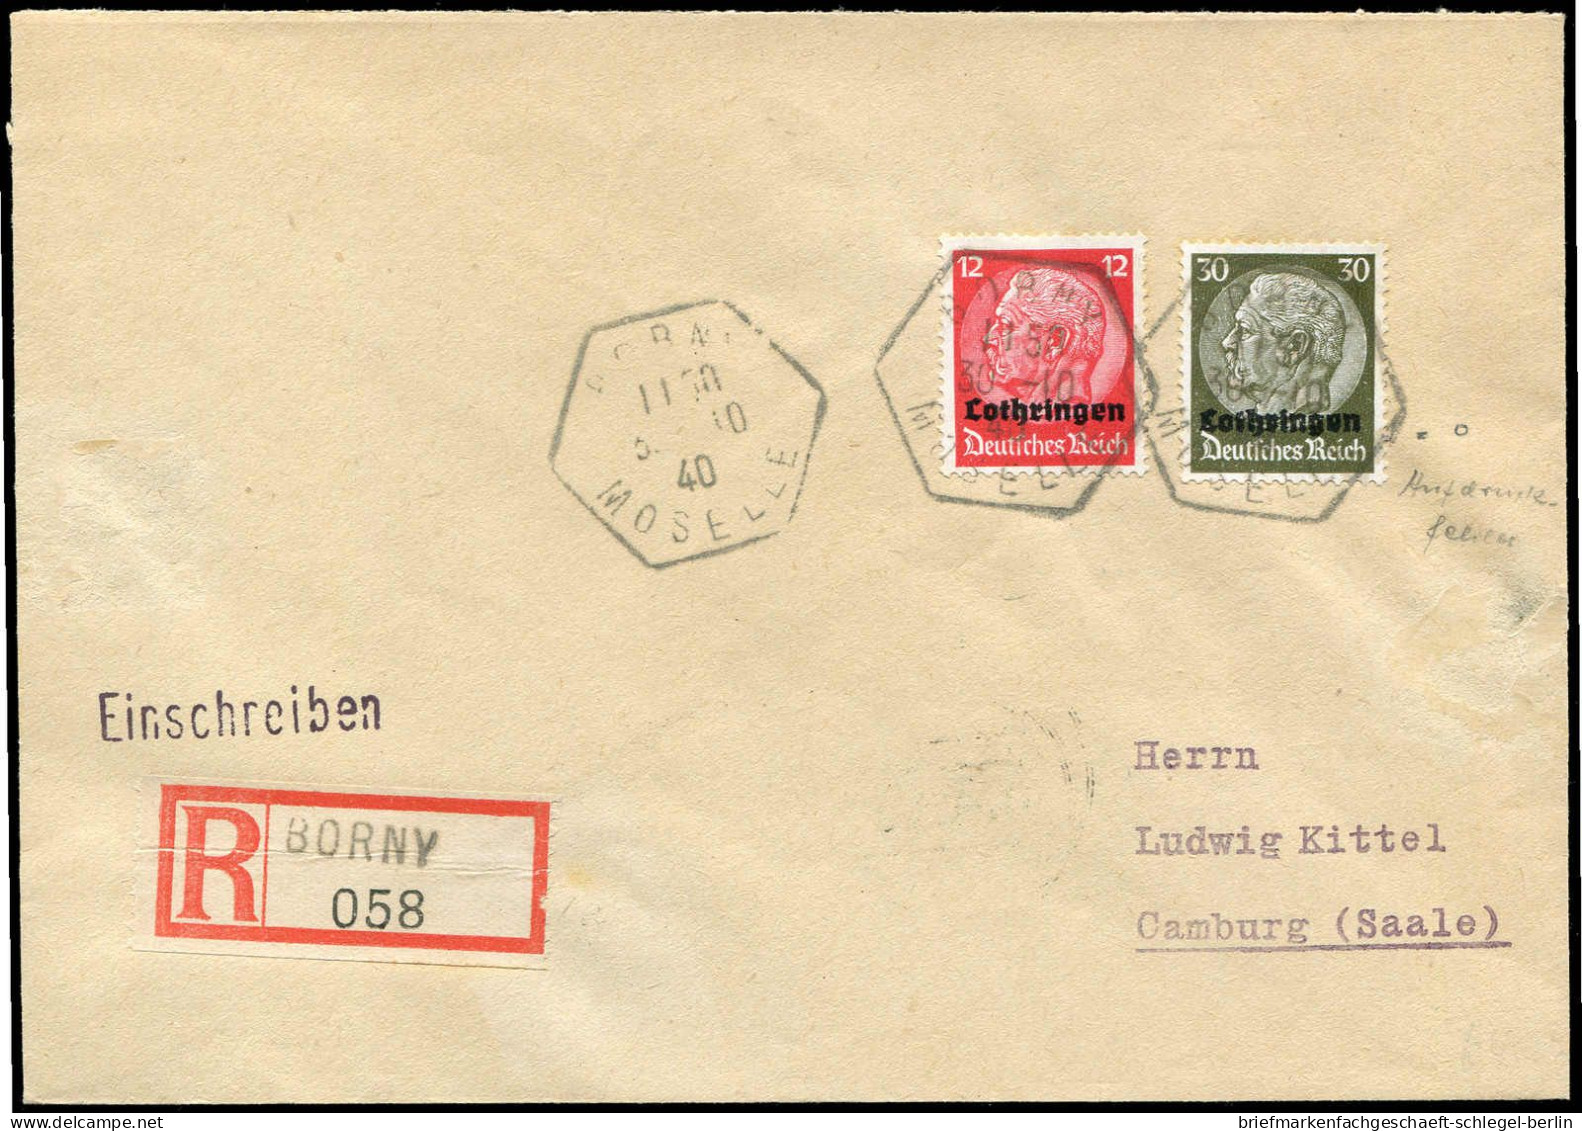 Deutsche Besetz.II.WK Lothringen, 1940, Brief - Occupation 1938-45